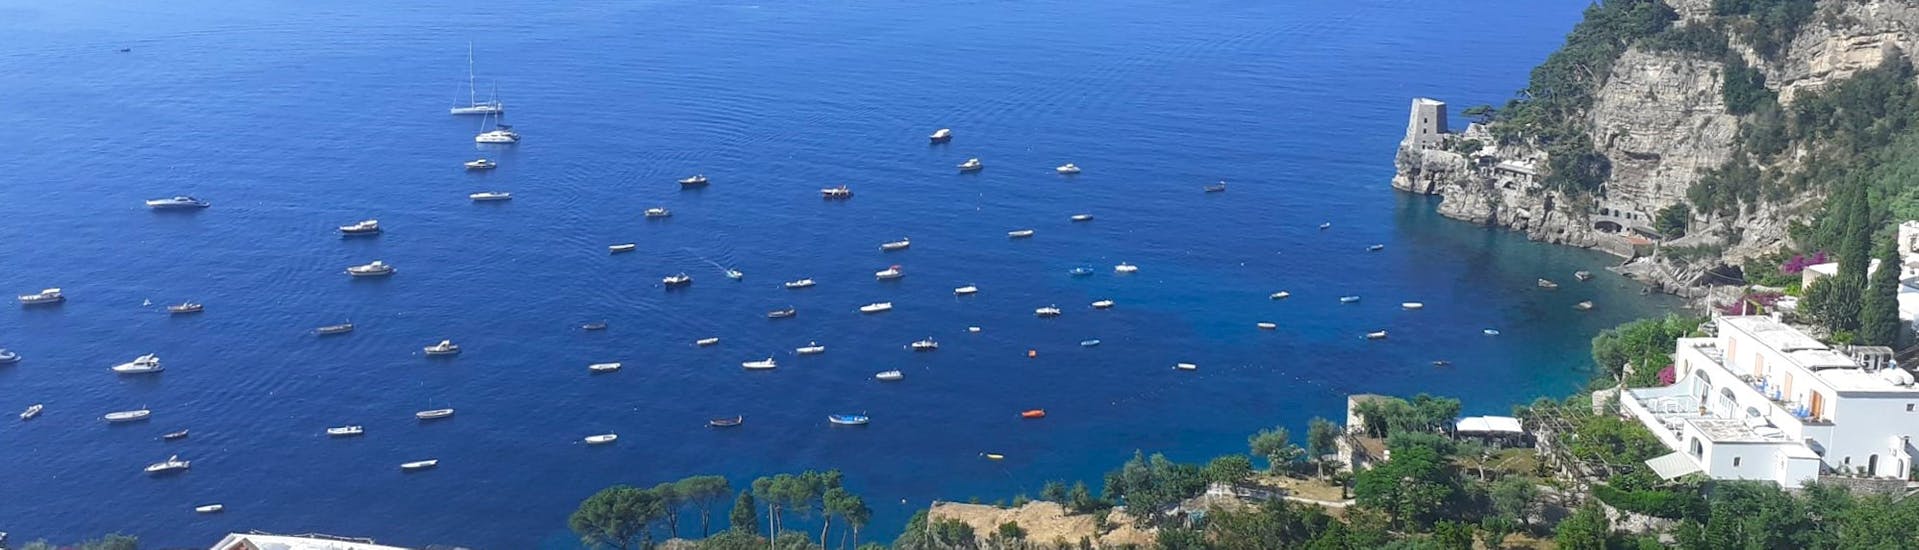 Blick auf die Amalfiküste von oben während der privaten Bootstour zur Amalfiküste ab Positano - Halbtags